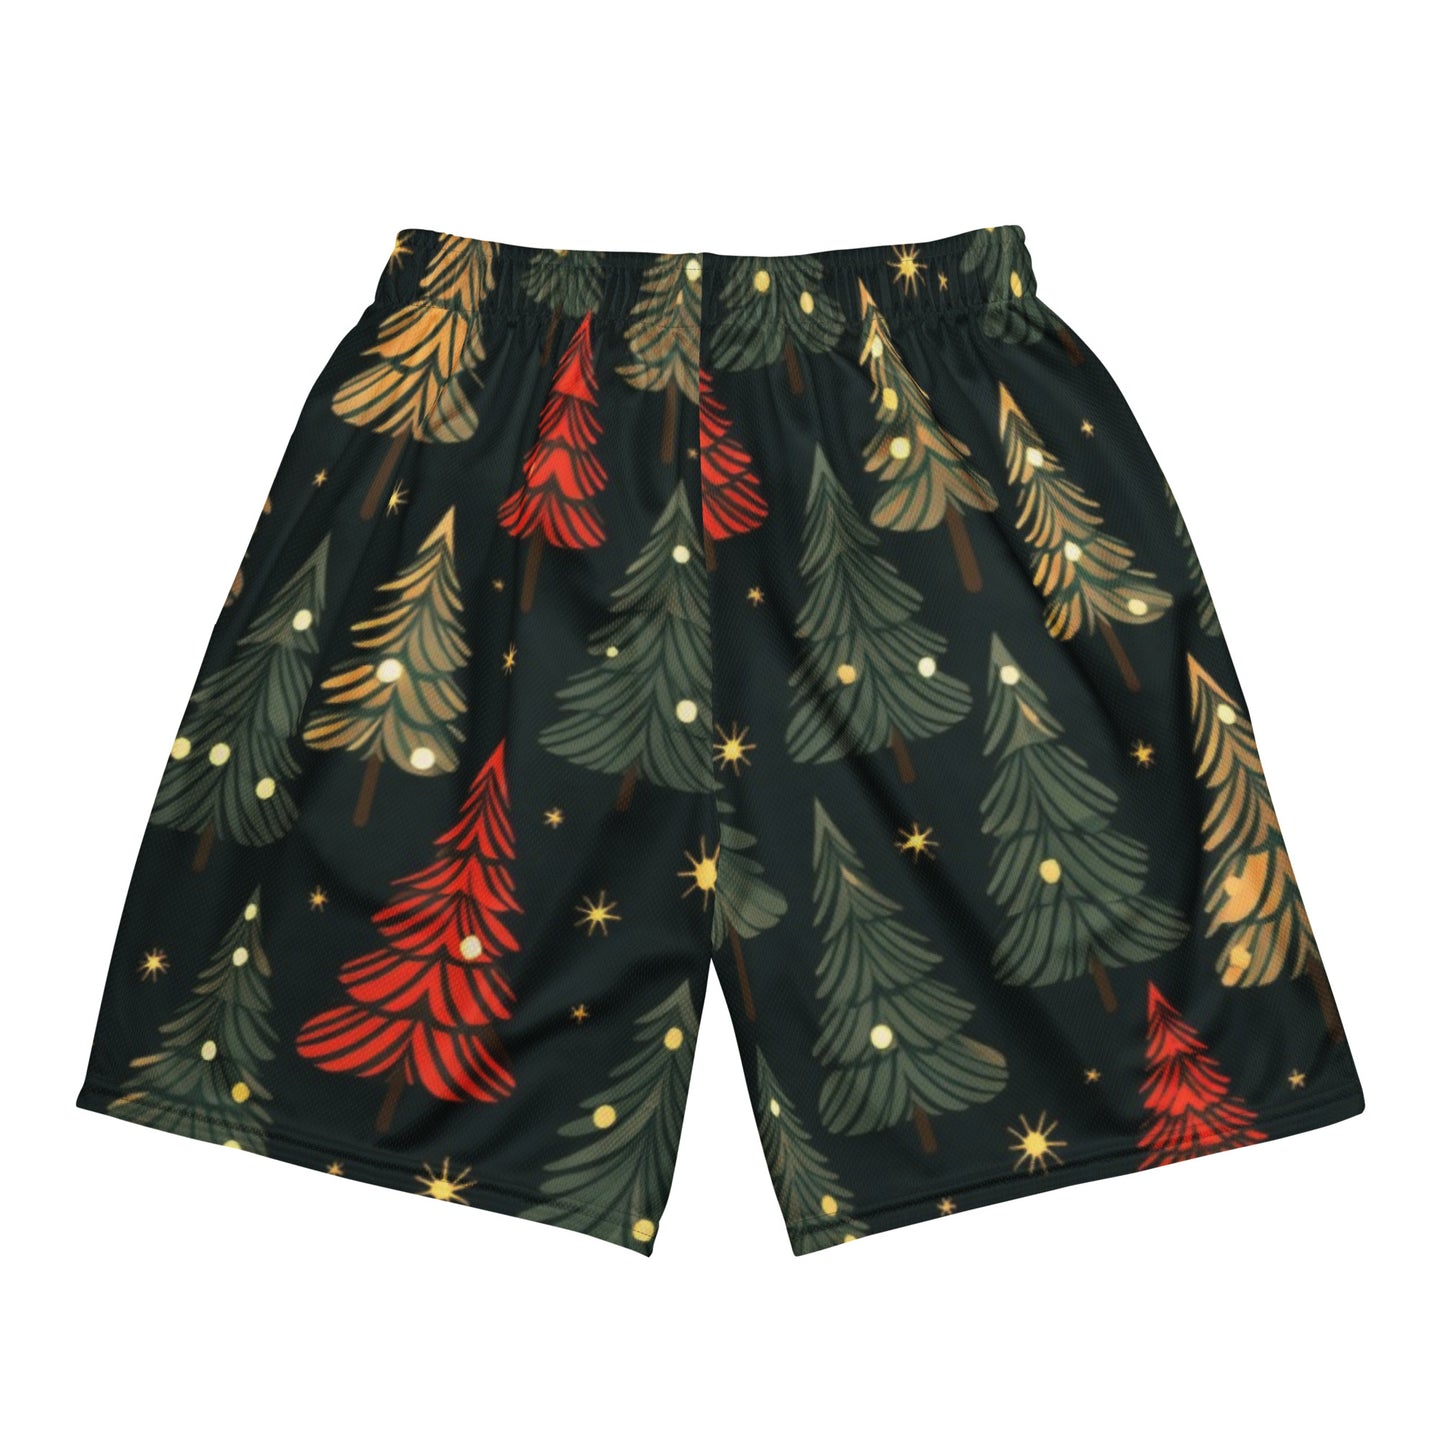 Weihnachtsbaum-Unisex-Mesh-Shorts 